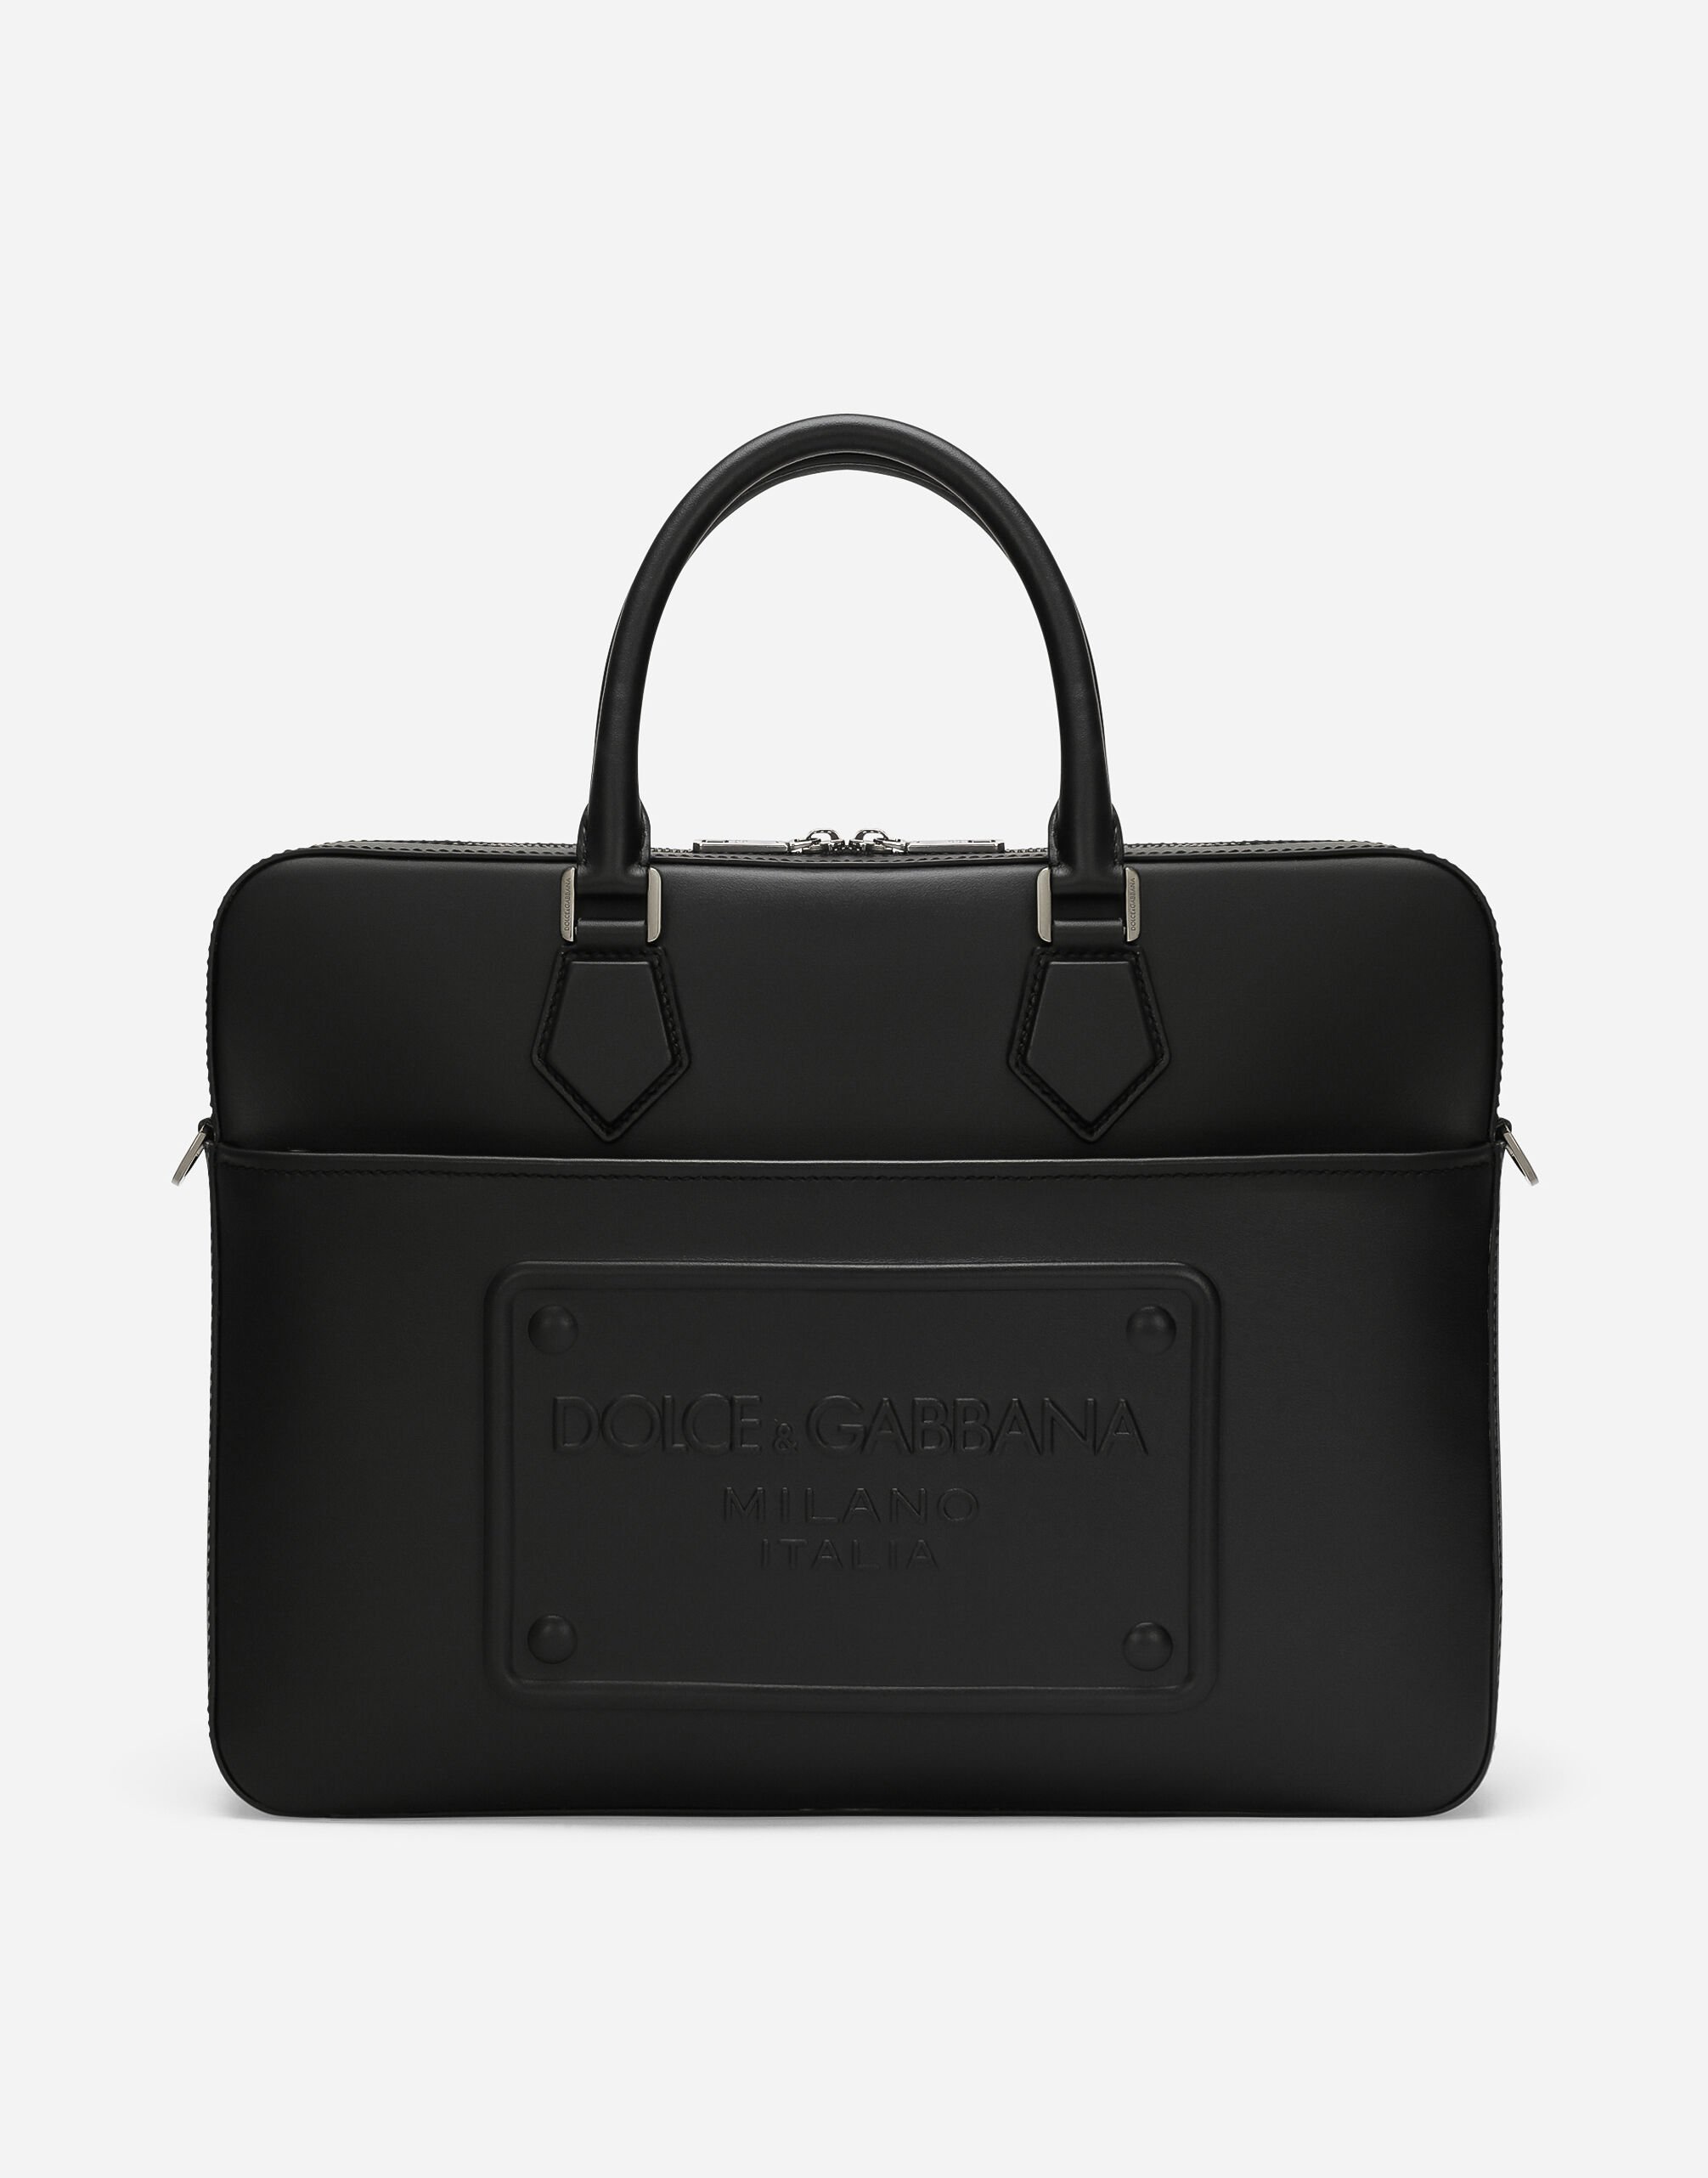 Dolce & Gabbana Briefcase in pelle di vitello Marrone BM3004A1275